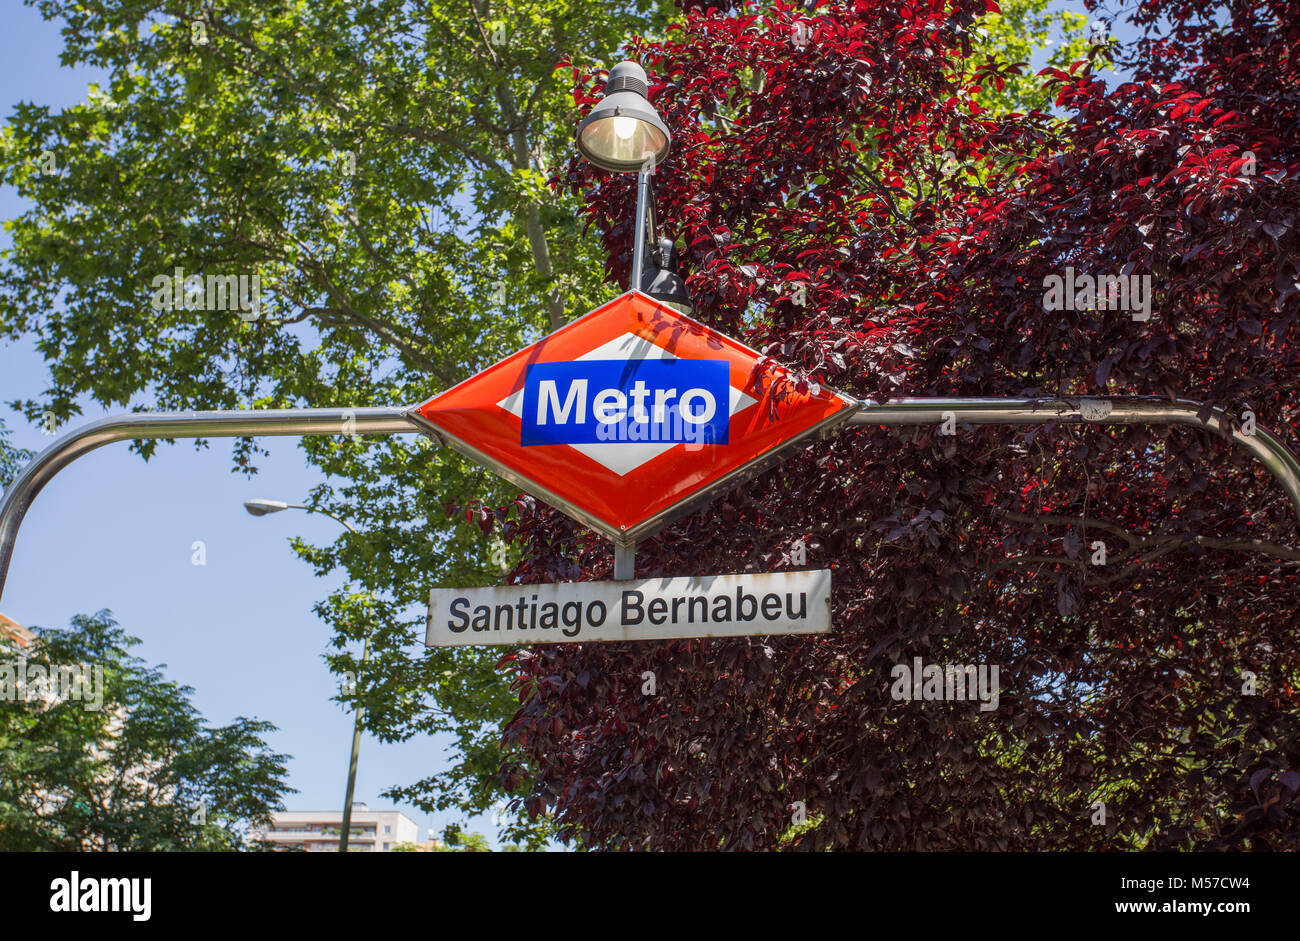 MADRID, España - 25 de junio, 2016 - signo de la estación de metro de Santiago Bernabeu, Madrid, España Foto de stock